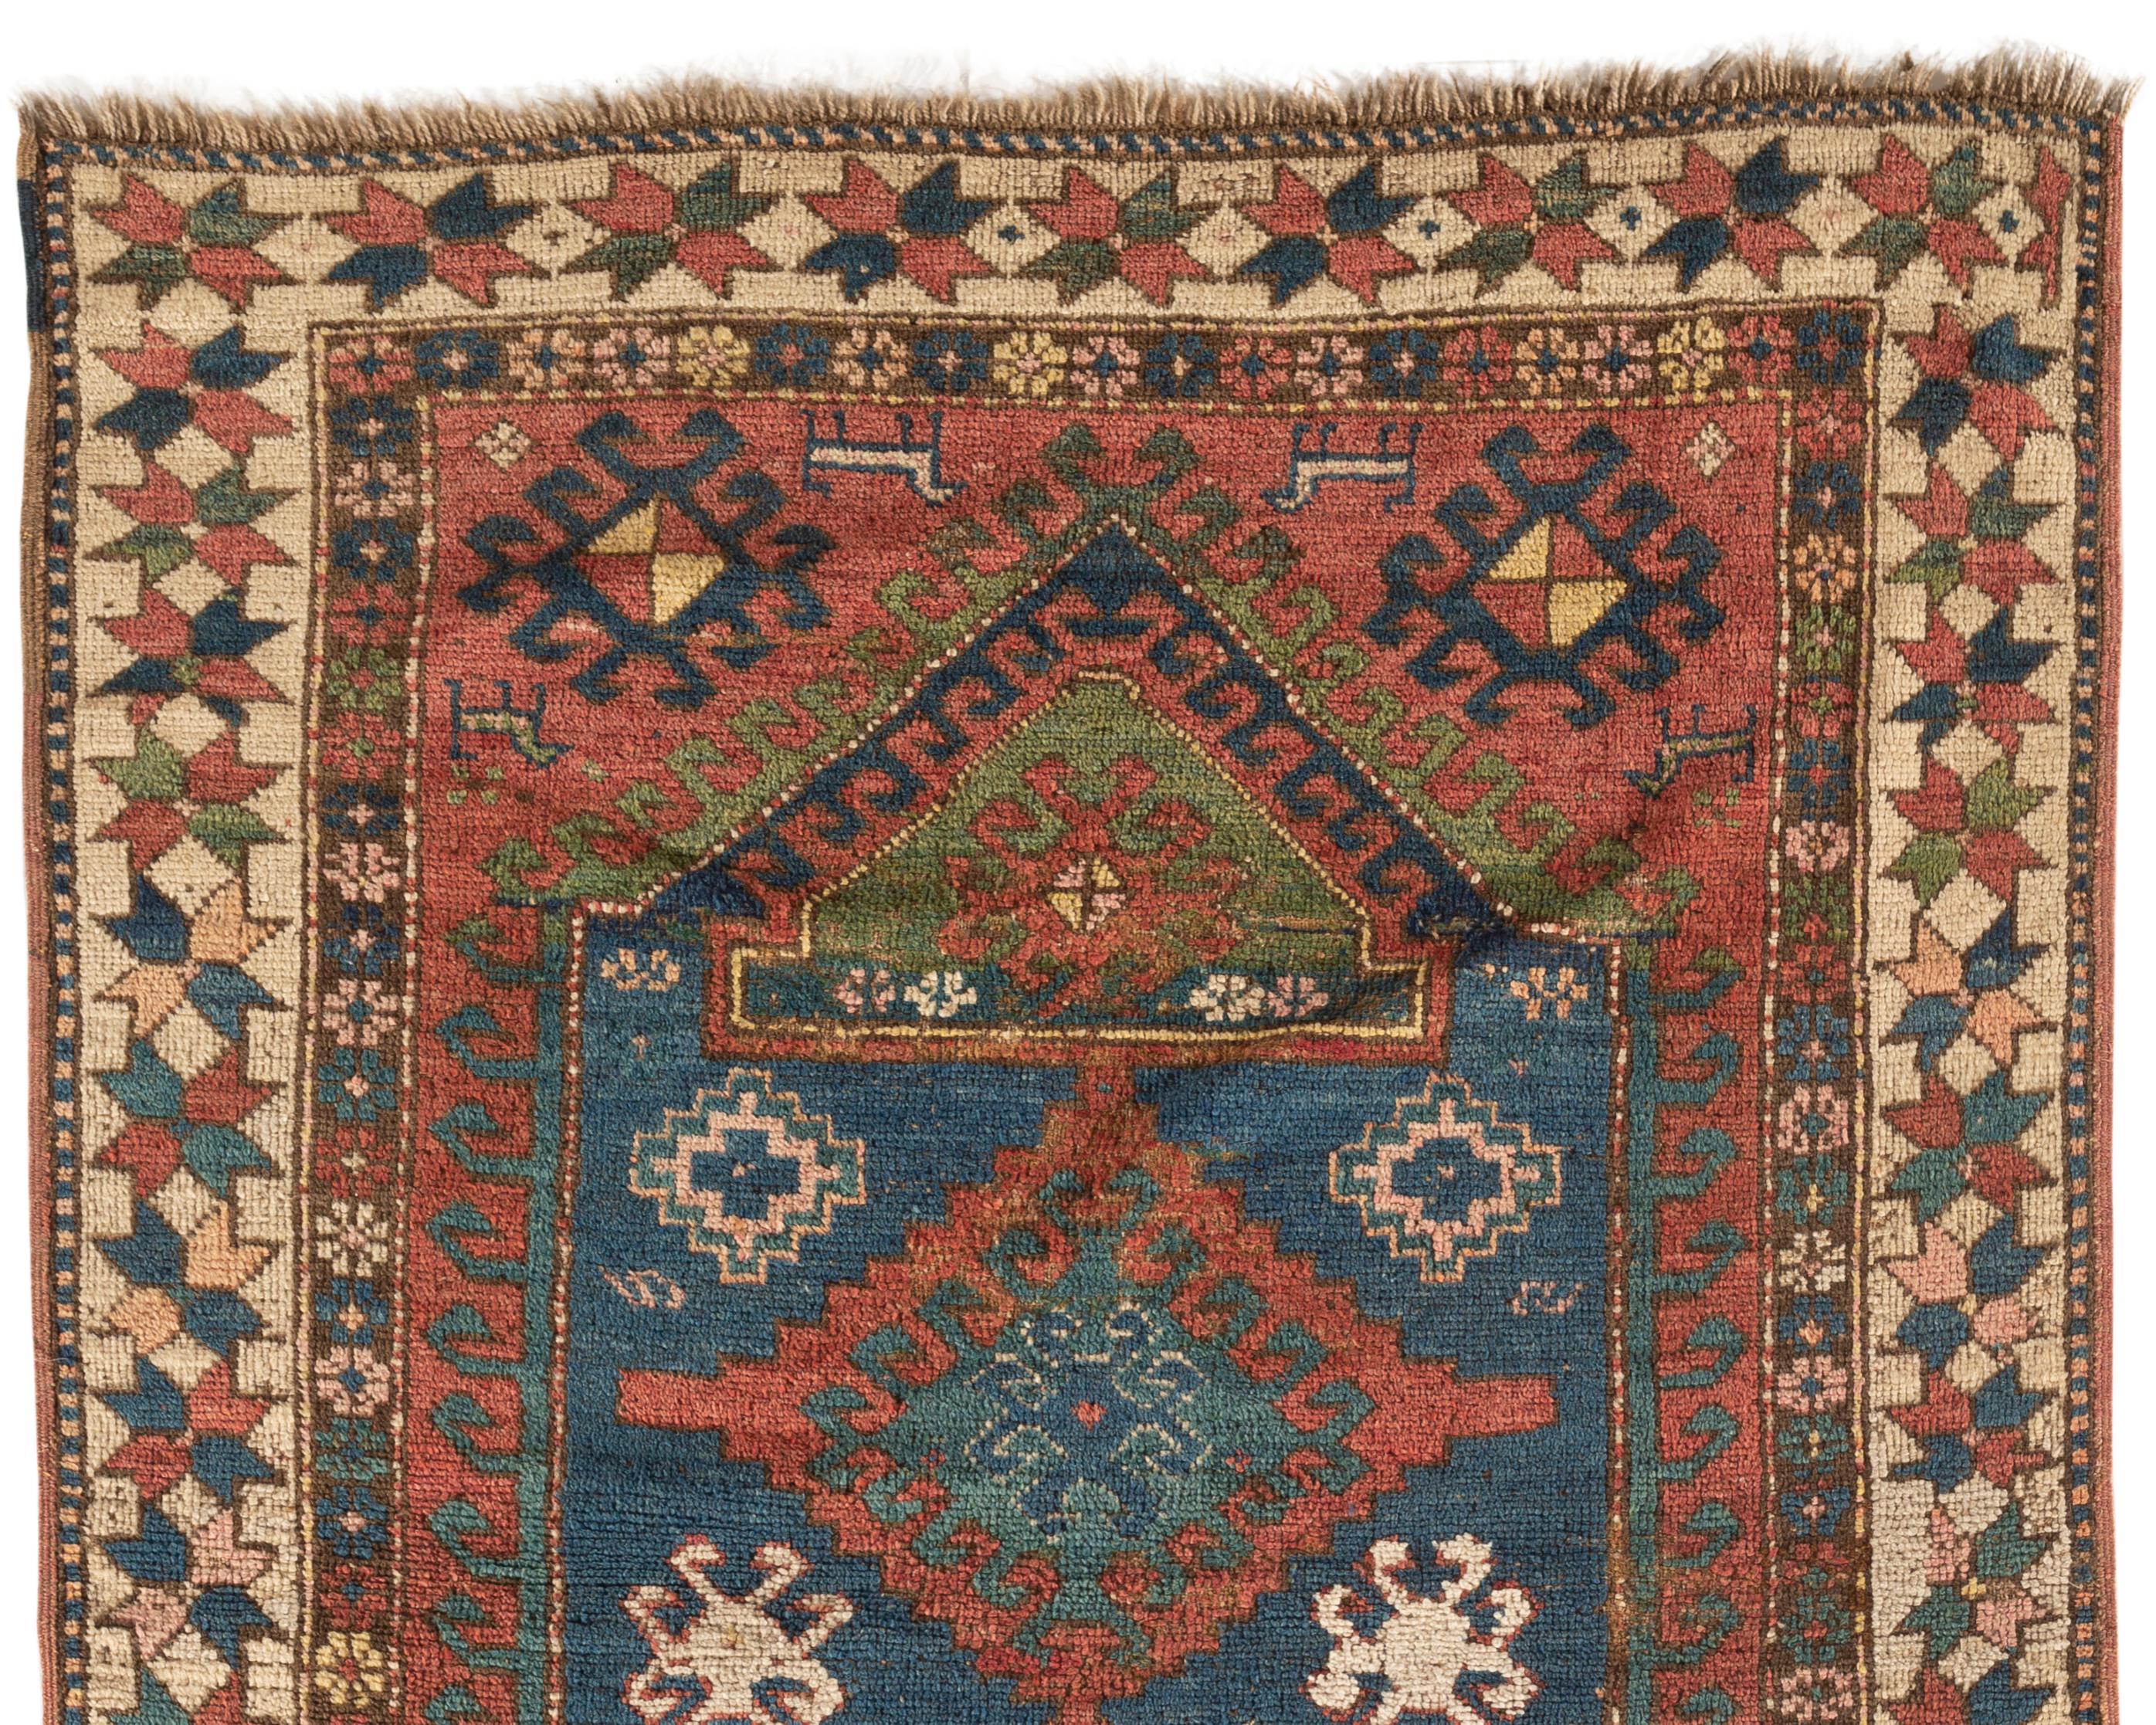 19th Century Antique Caucasian Kazak Rug, circa 1890 4' x 6'10 For Sale